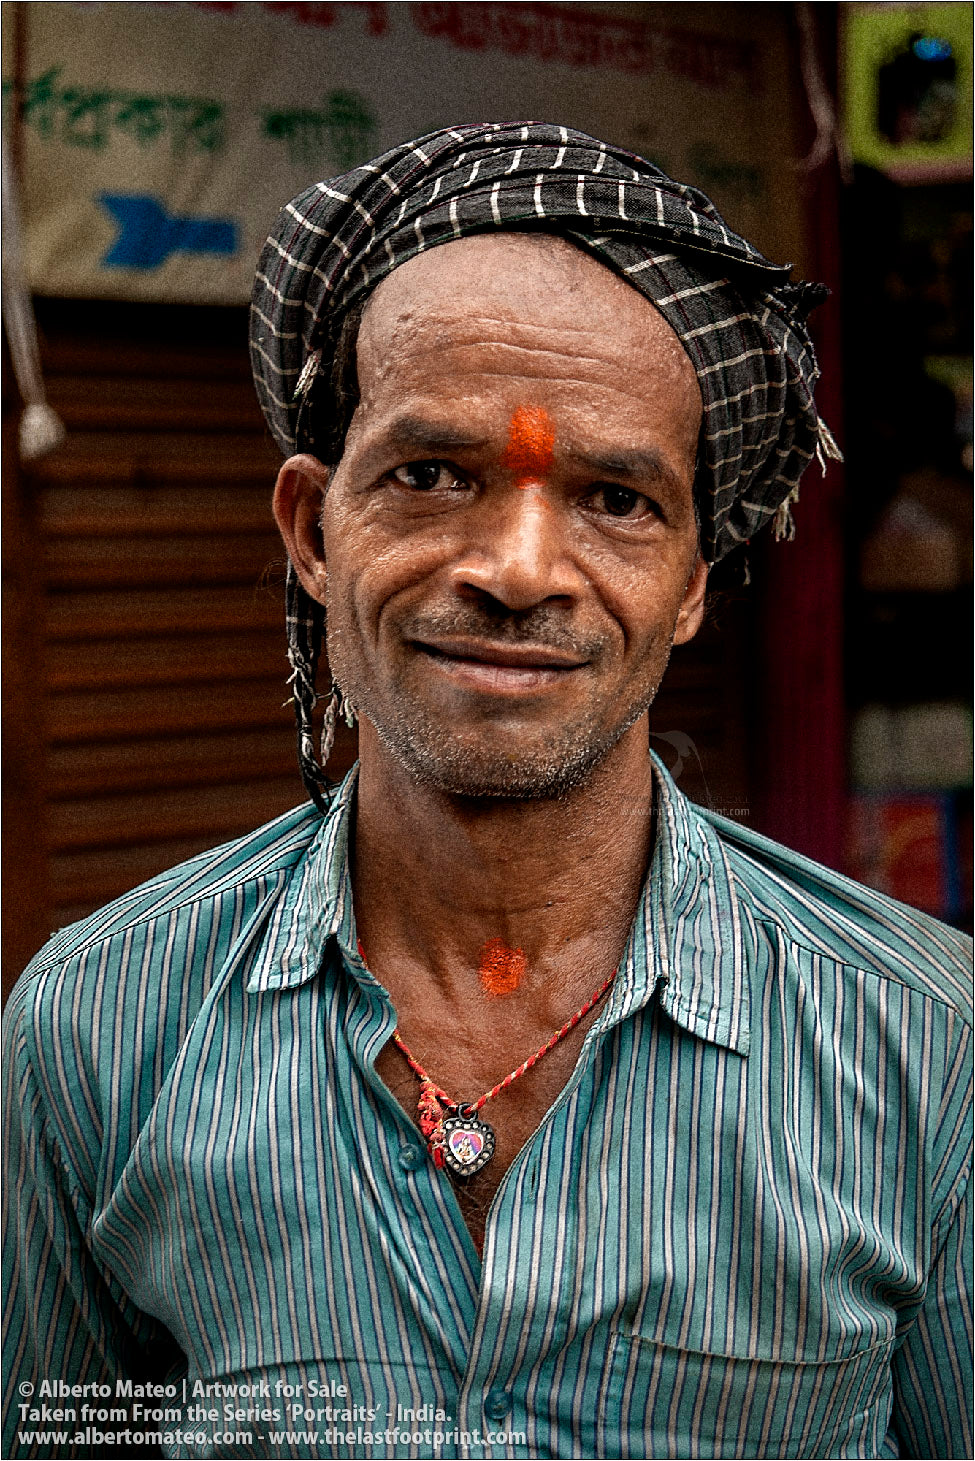 Portrait of Smiling Porter in Bara Bazar, Kolkata, India. [COLOR]